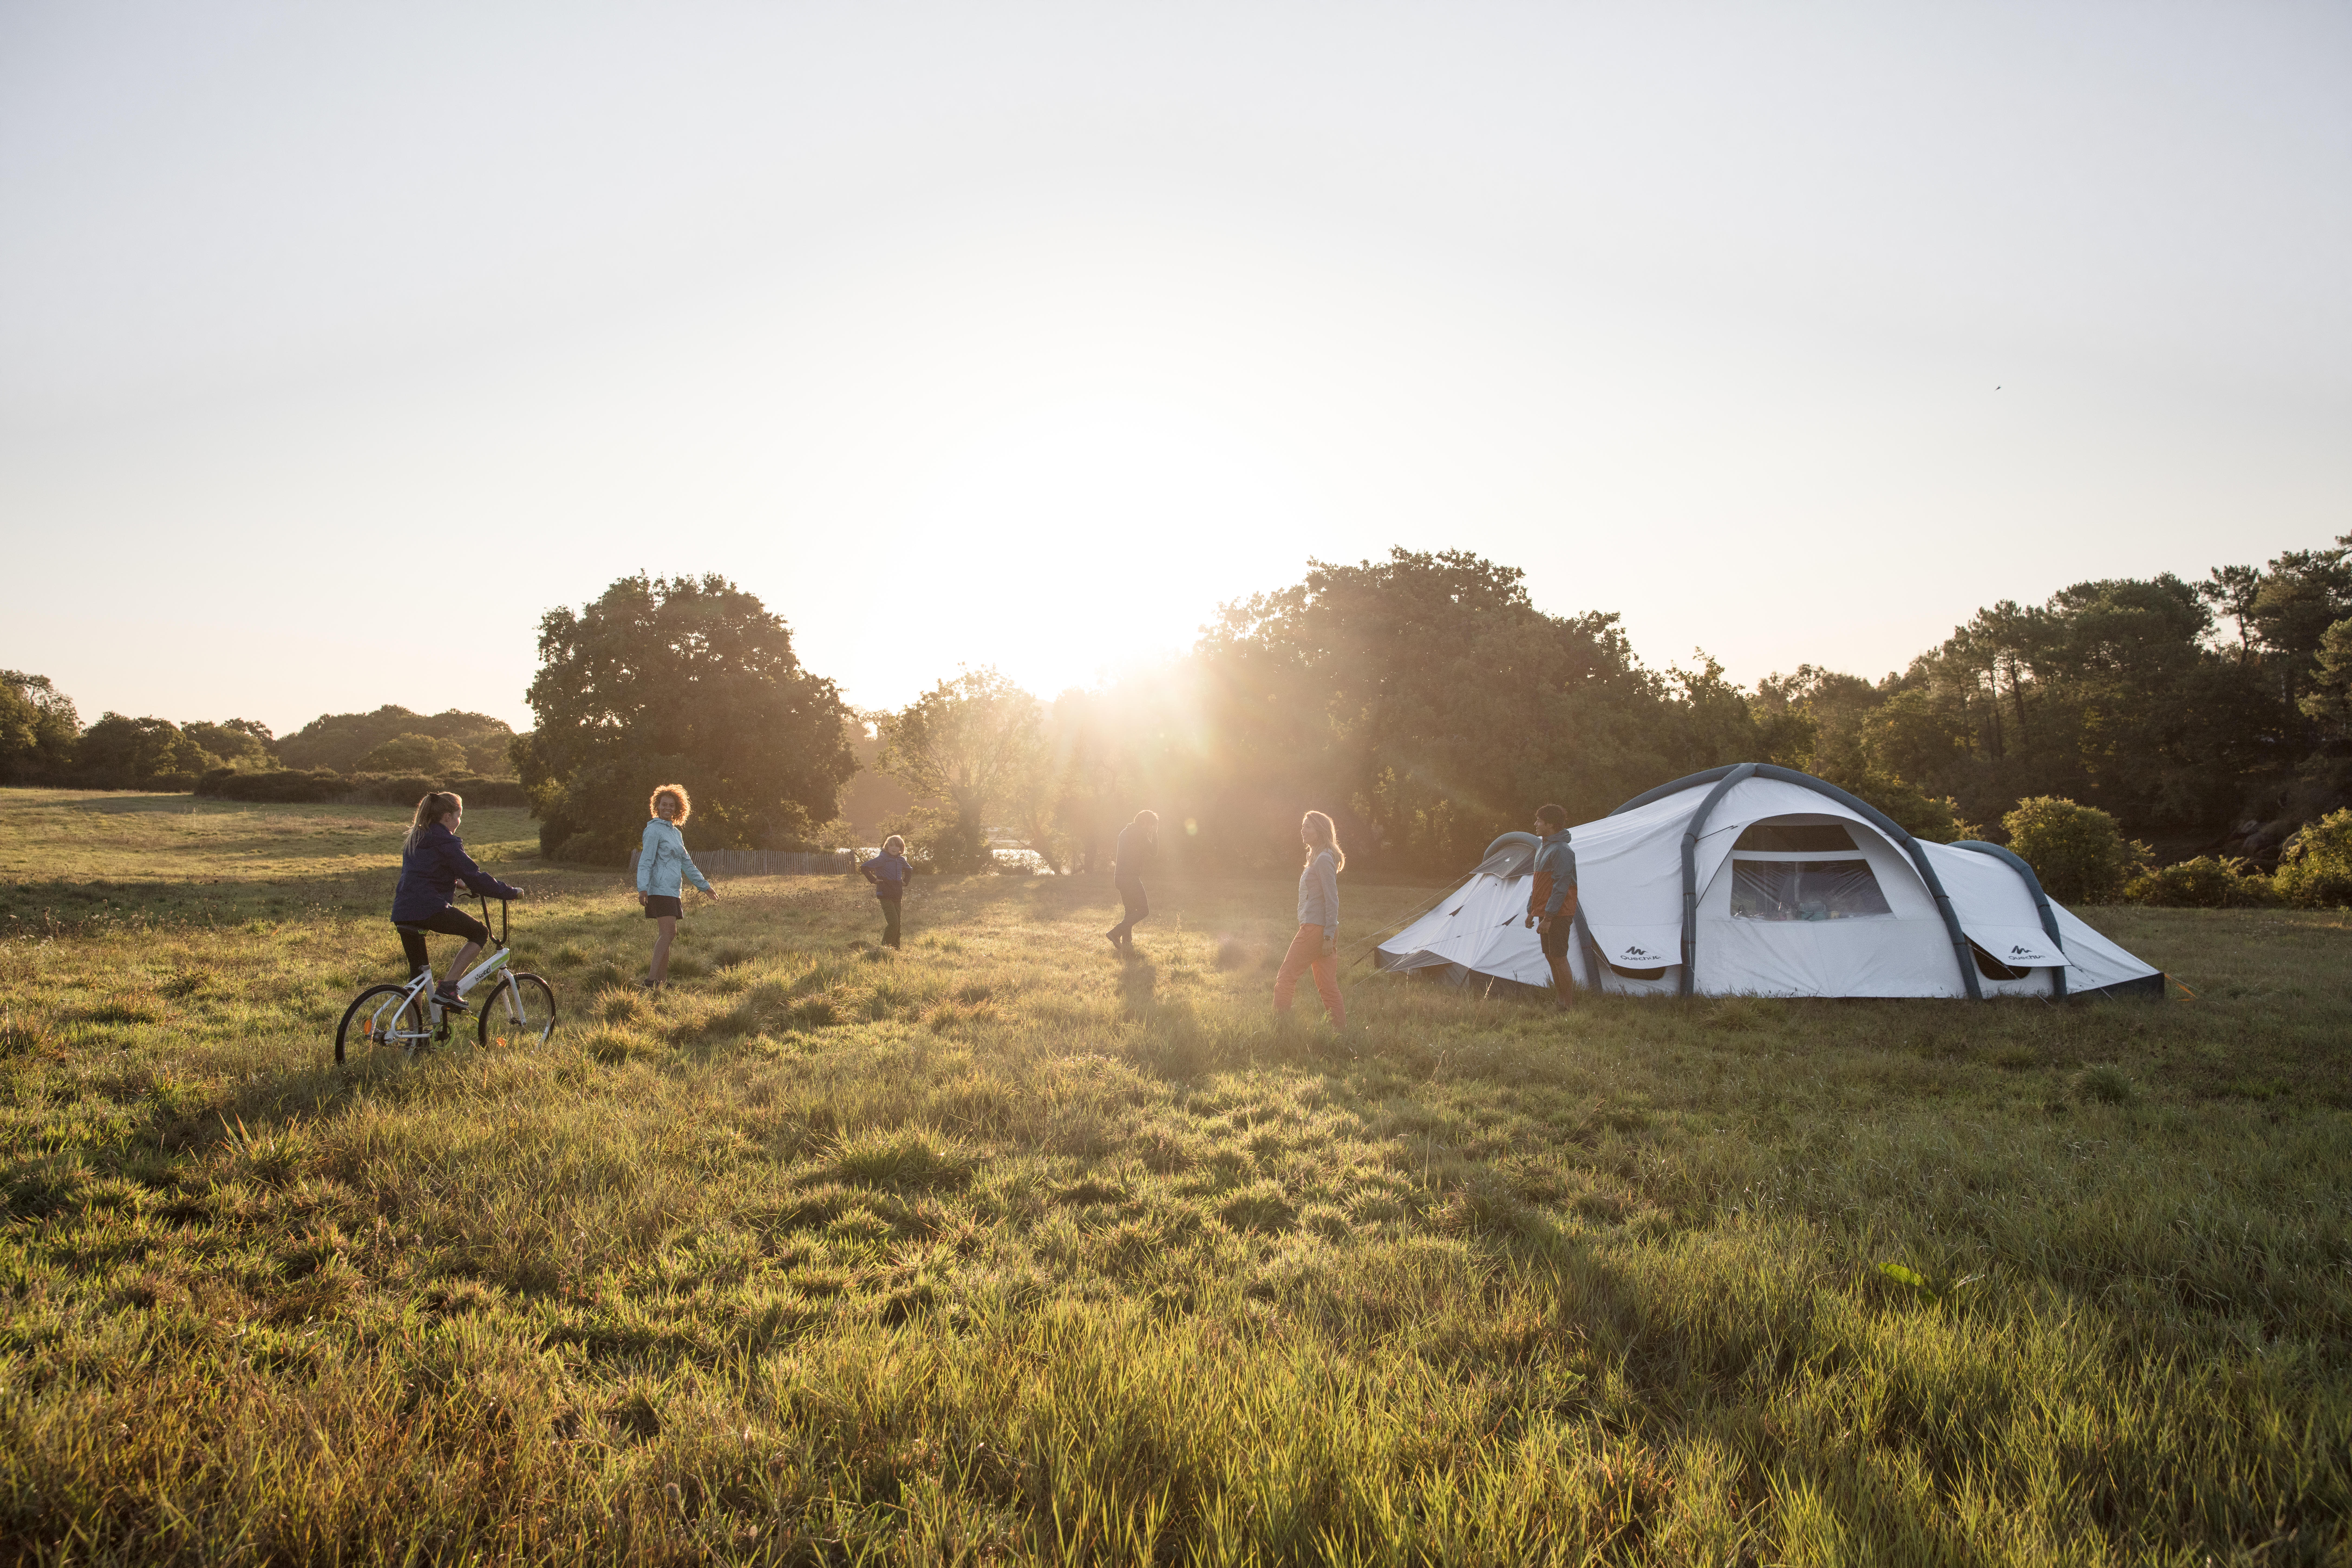 Organiza la acampada perfecta